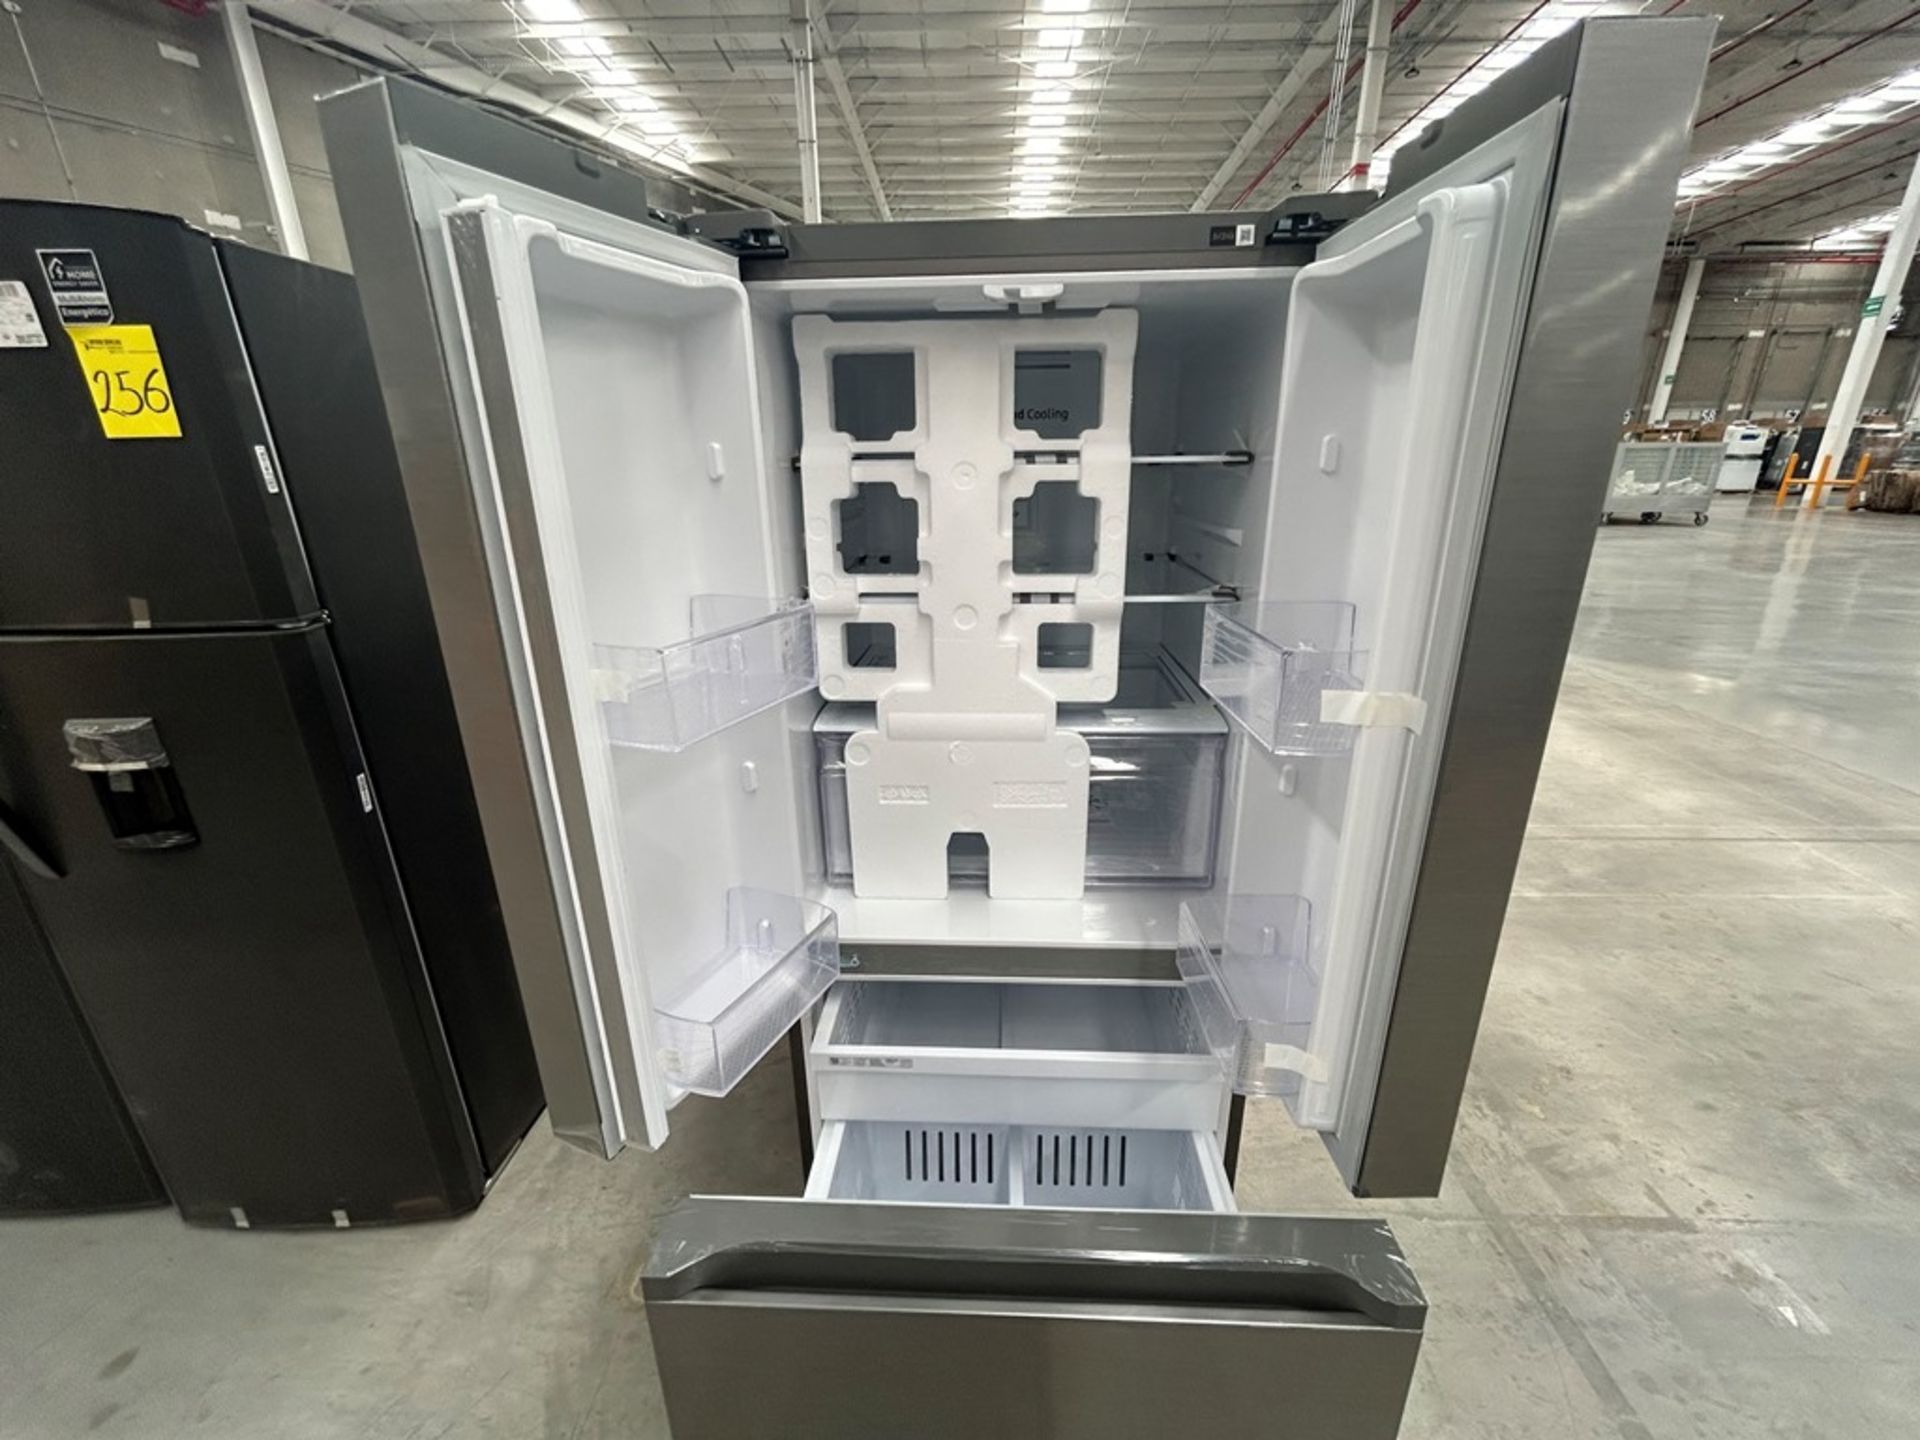 1 refrigerador Marca SAMSUNG, Modelo RF22A4010S9, Serie 01967J, Color GRIS (Equipo de devolución) - Image 4 of 5